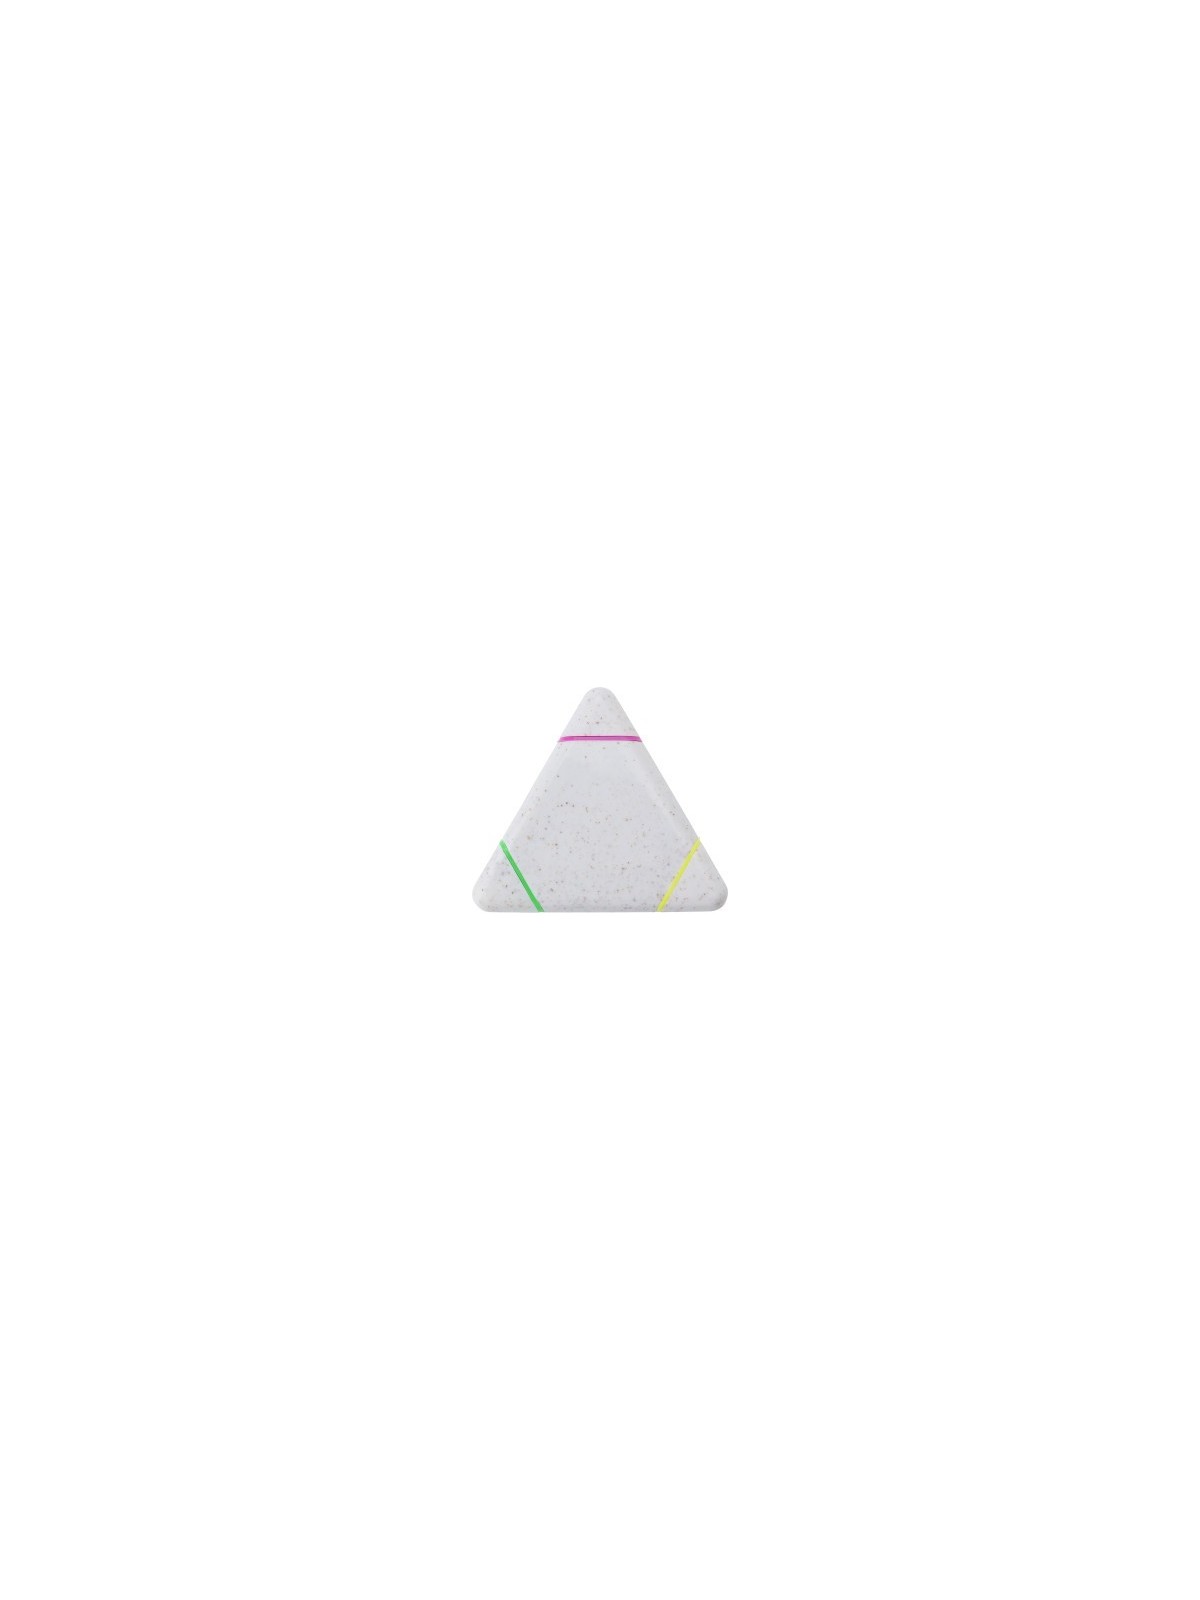 70-194 Surligneur triangle multi-couleur personnalisé